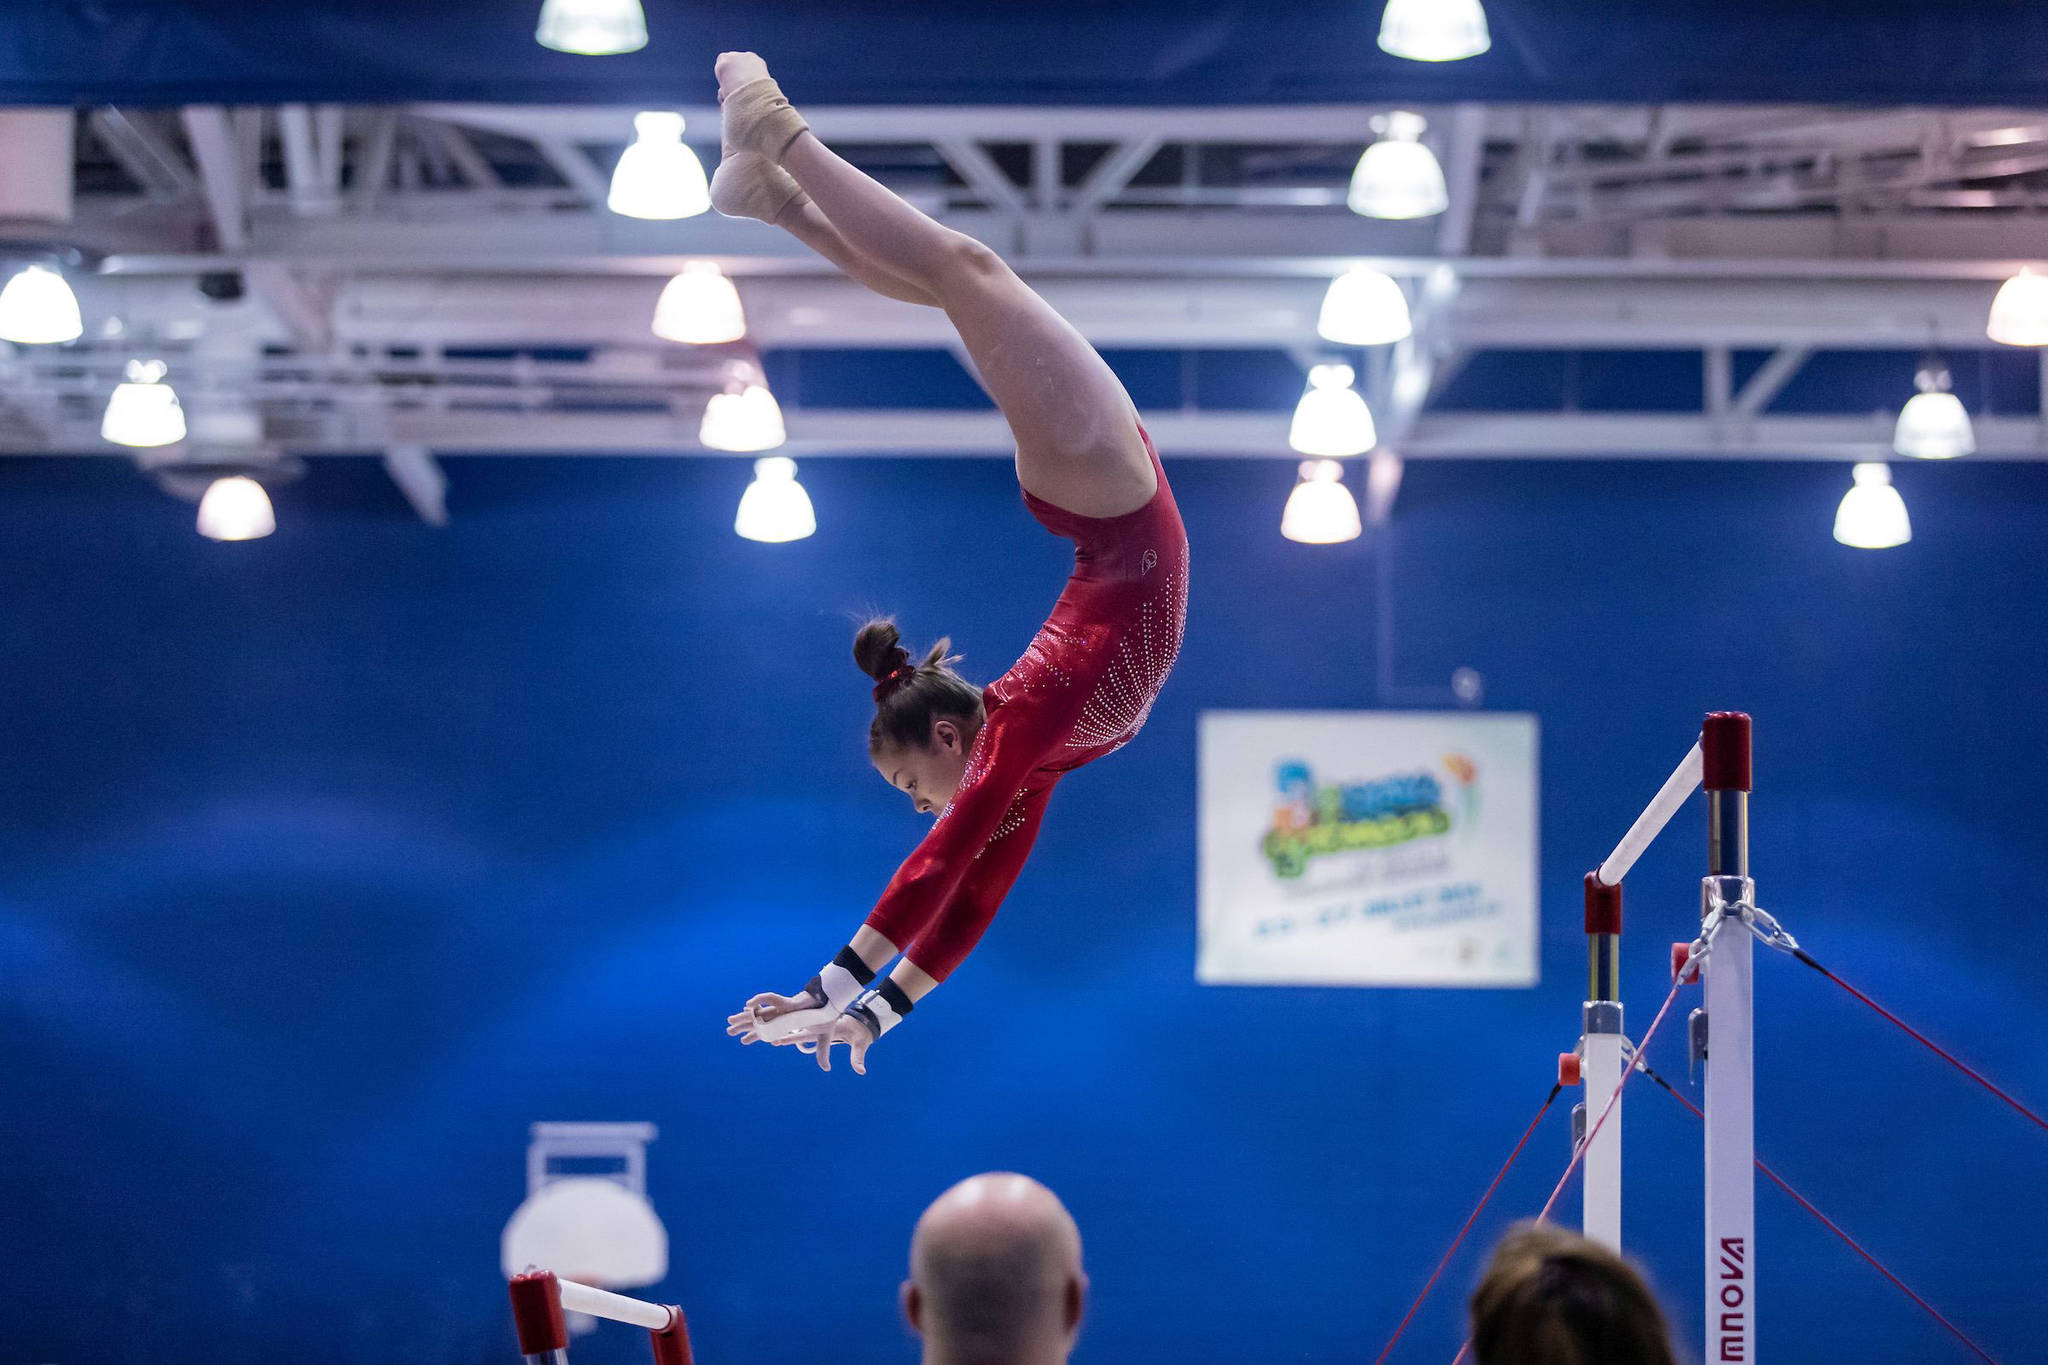 KW Gymnastics Club to host Ontario Cup for men's artistic gymnastics